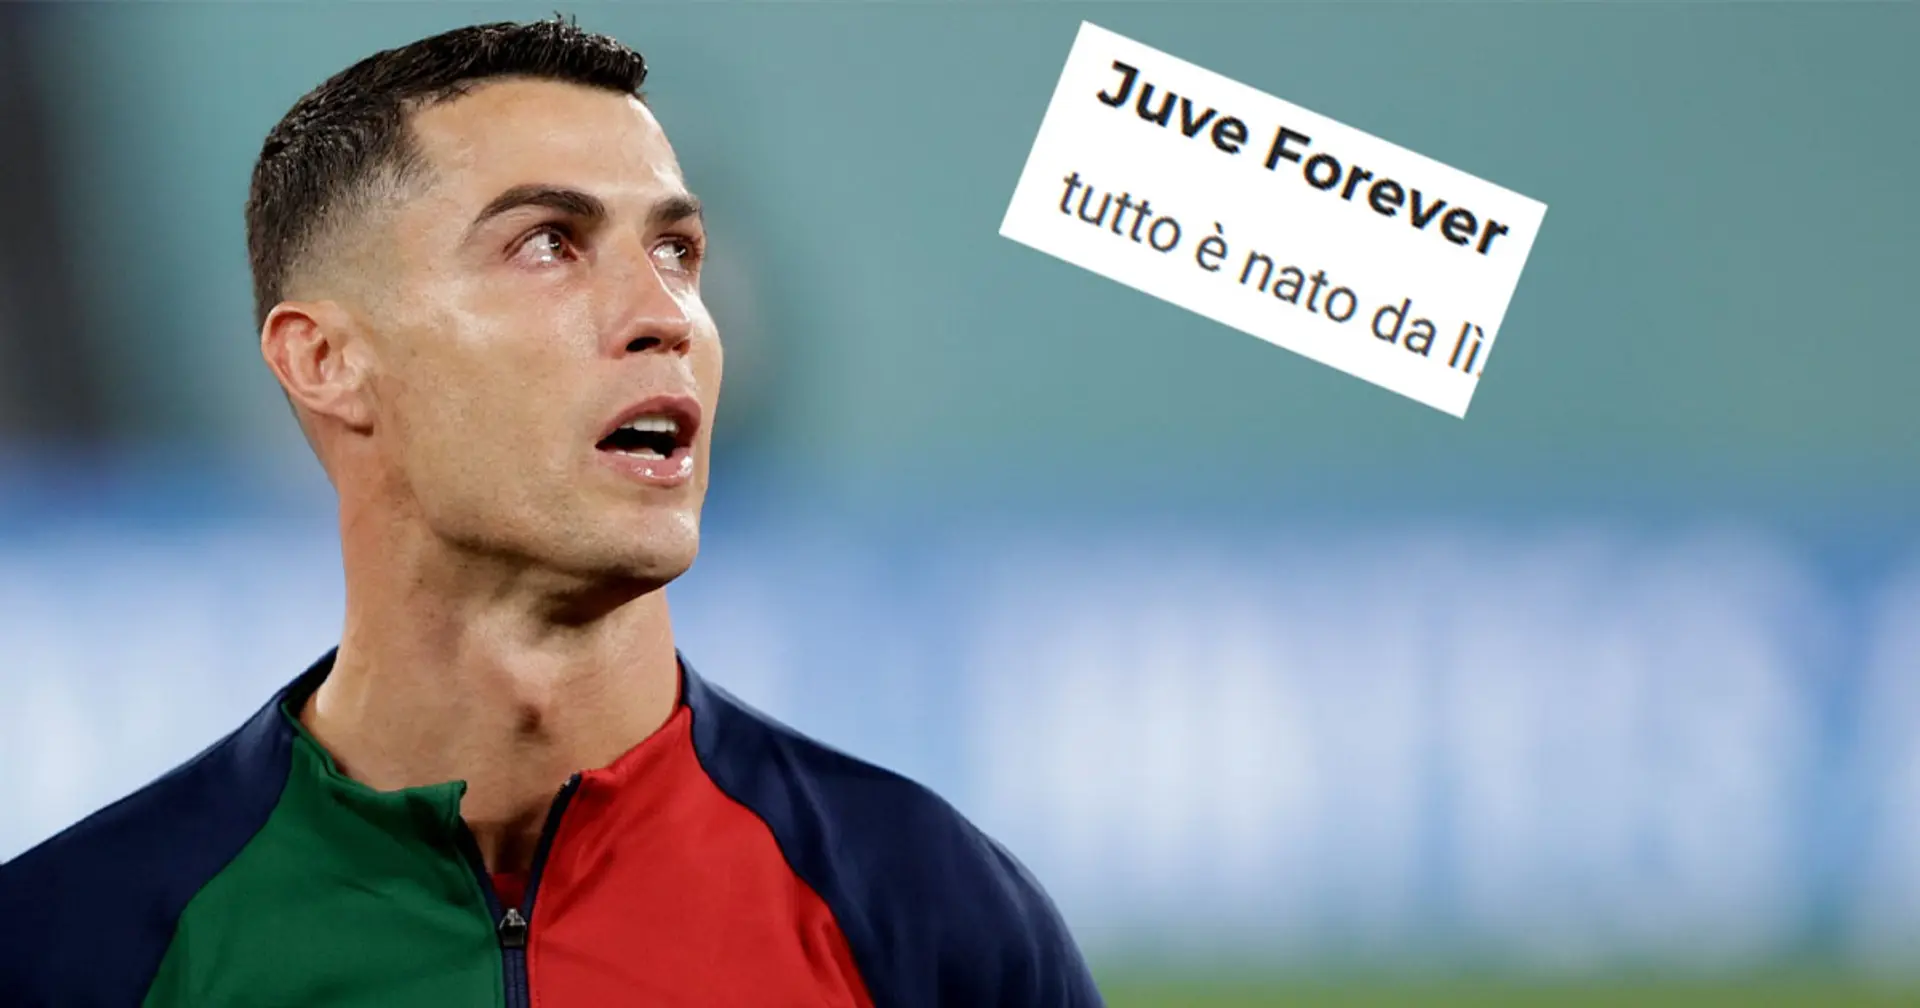 Da "Tutto è nato da lì" a "Che personaggio": tifosi della Juventus contro CR7 dopo l'ultima richiesta del portoghese